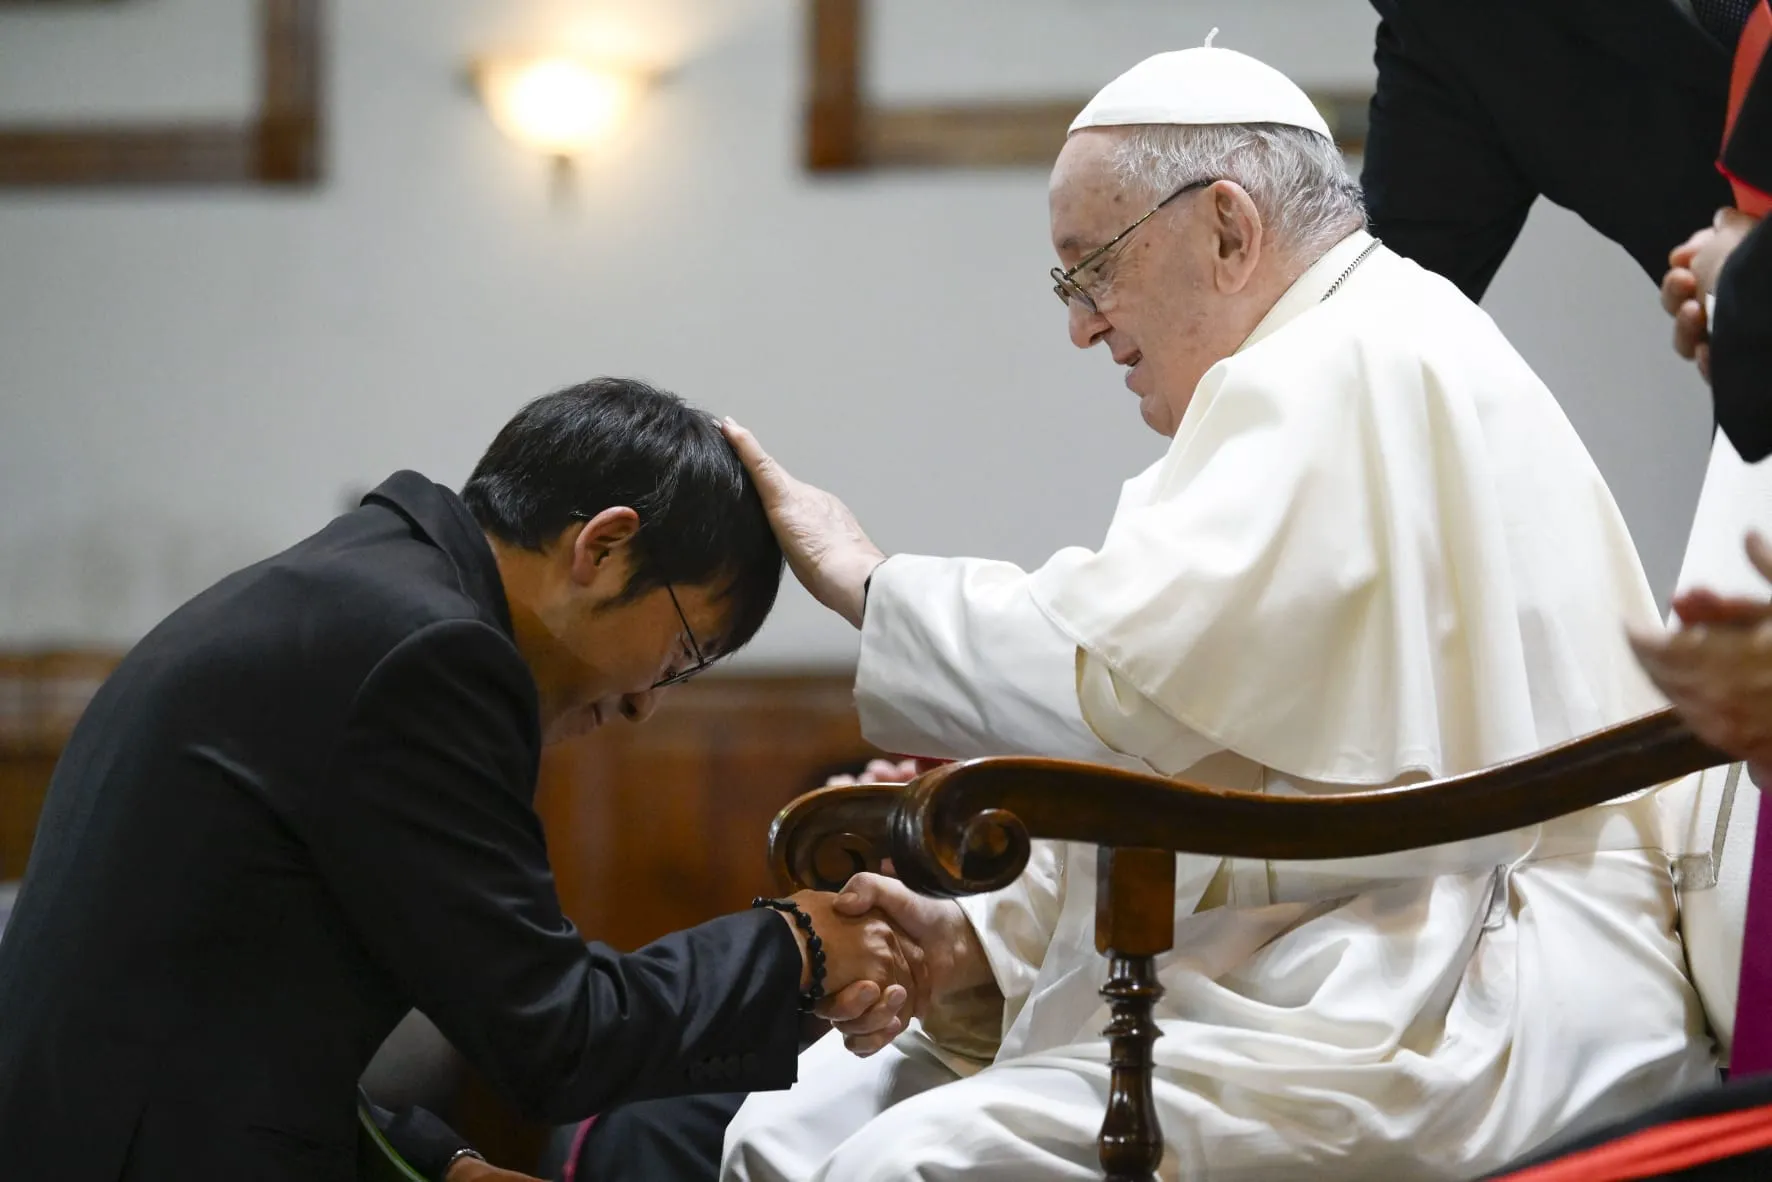 Mongolia. El Papa Francisco saluda a joven sacerdote que fue ayudado por las misioneras de la Caridad en su vocación?w=200&h=150